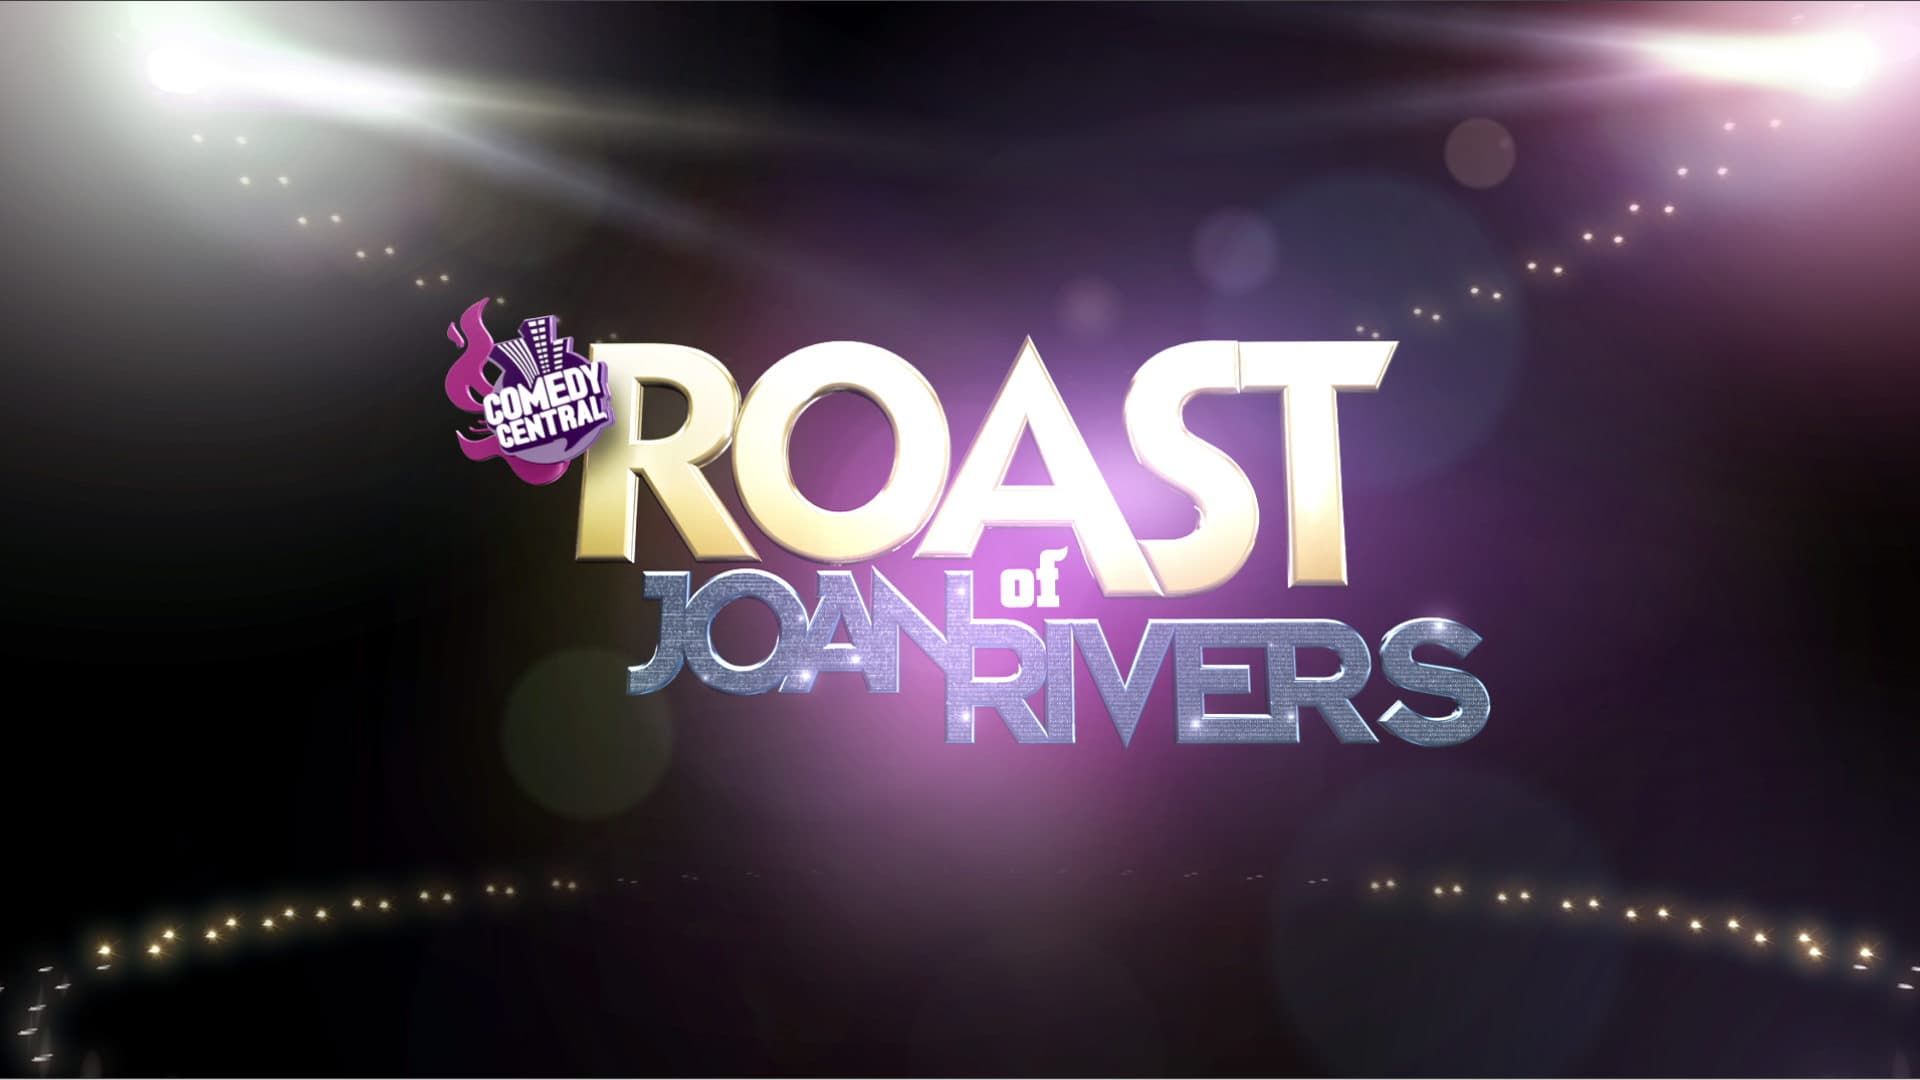 Cubierta de Comedy Central Roast of Joan Rivers